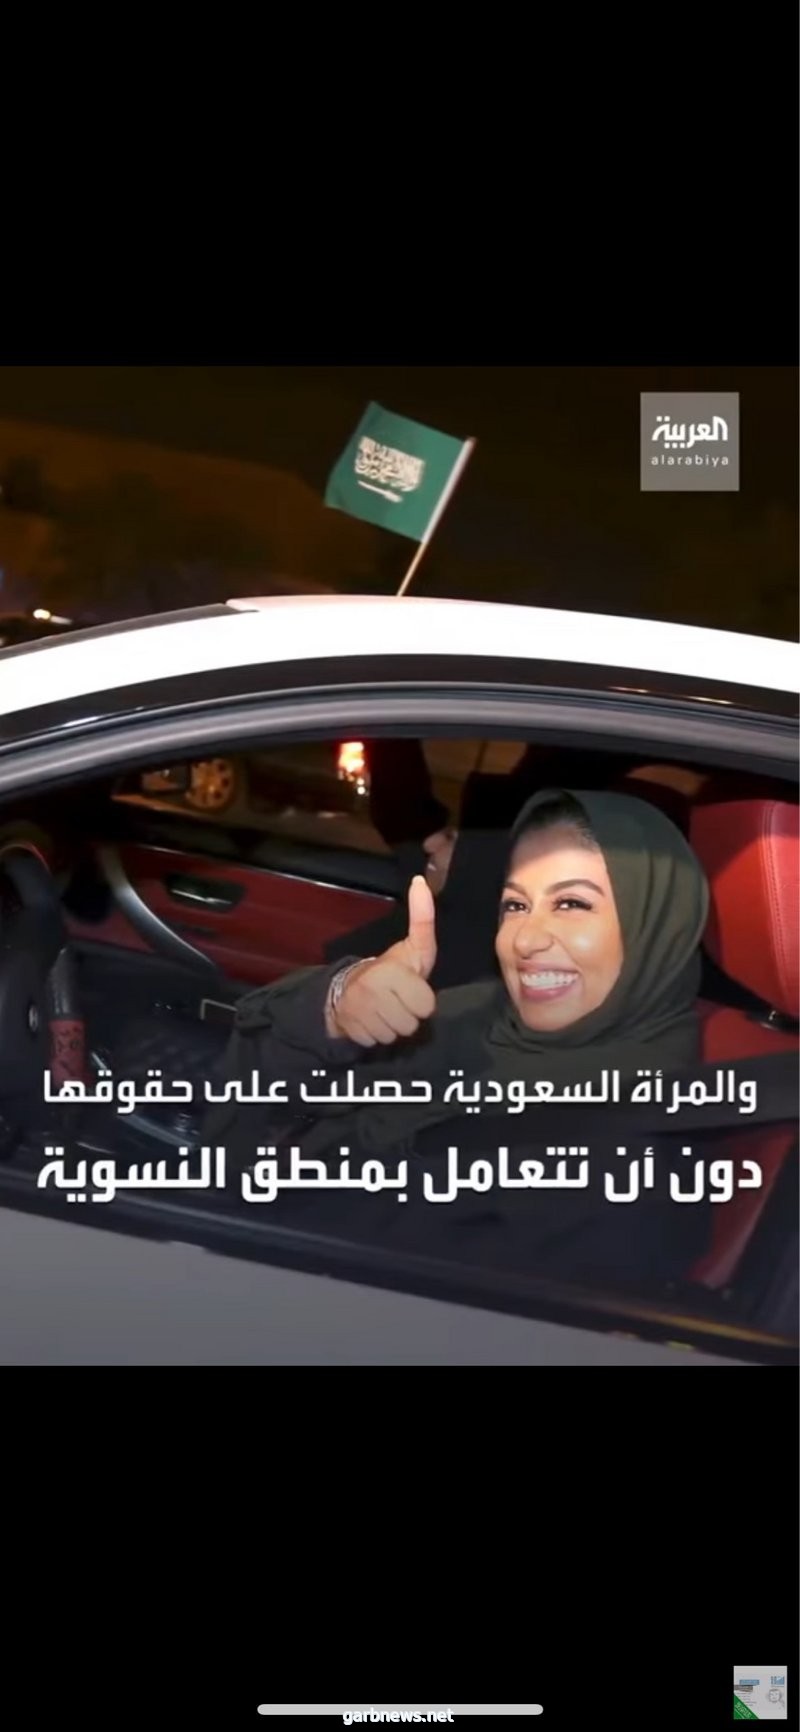 "الهزاني": "الصحوة" أغلقت الباب تمامًا في وجه المرأة.. و"تيار الصحوة" حرم المرأة السعودية من هويتها